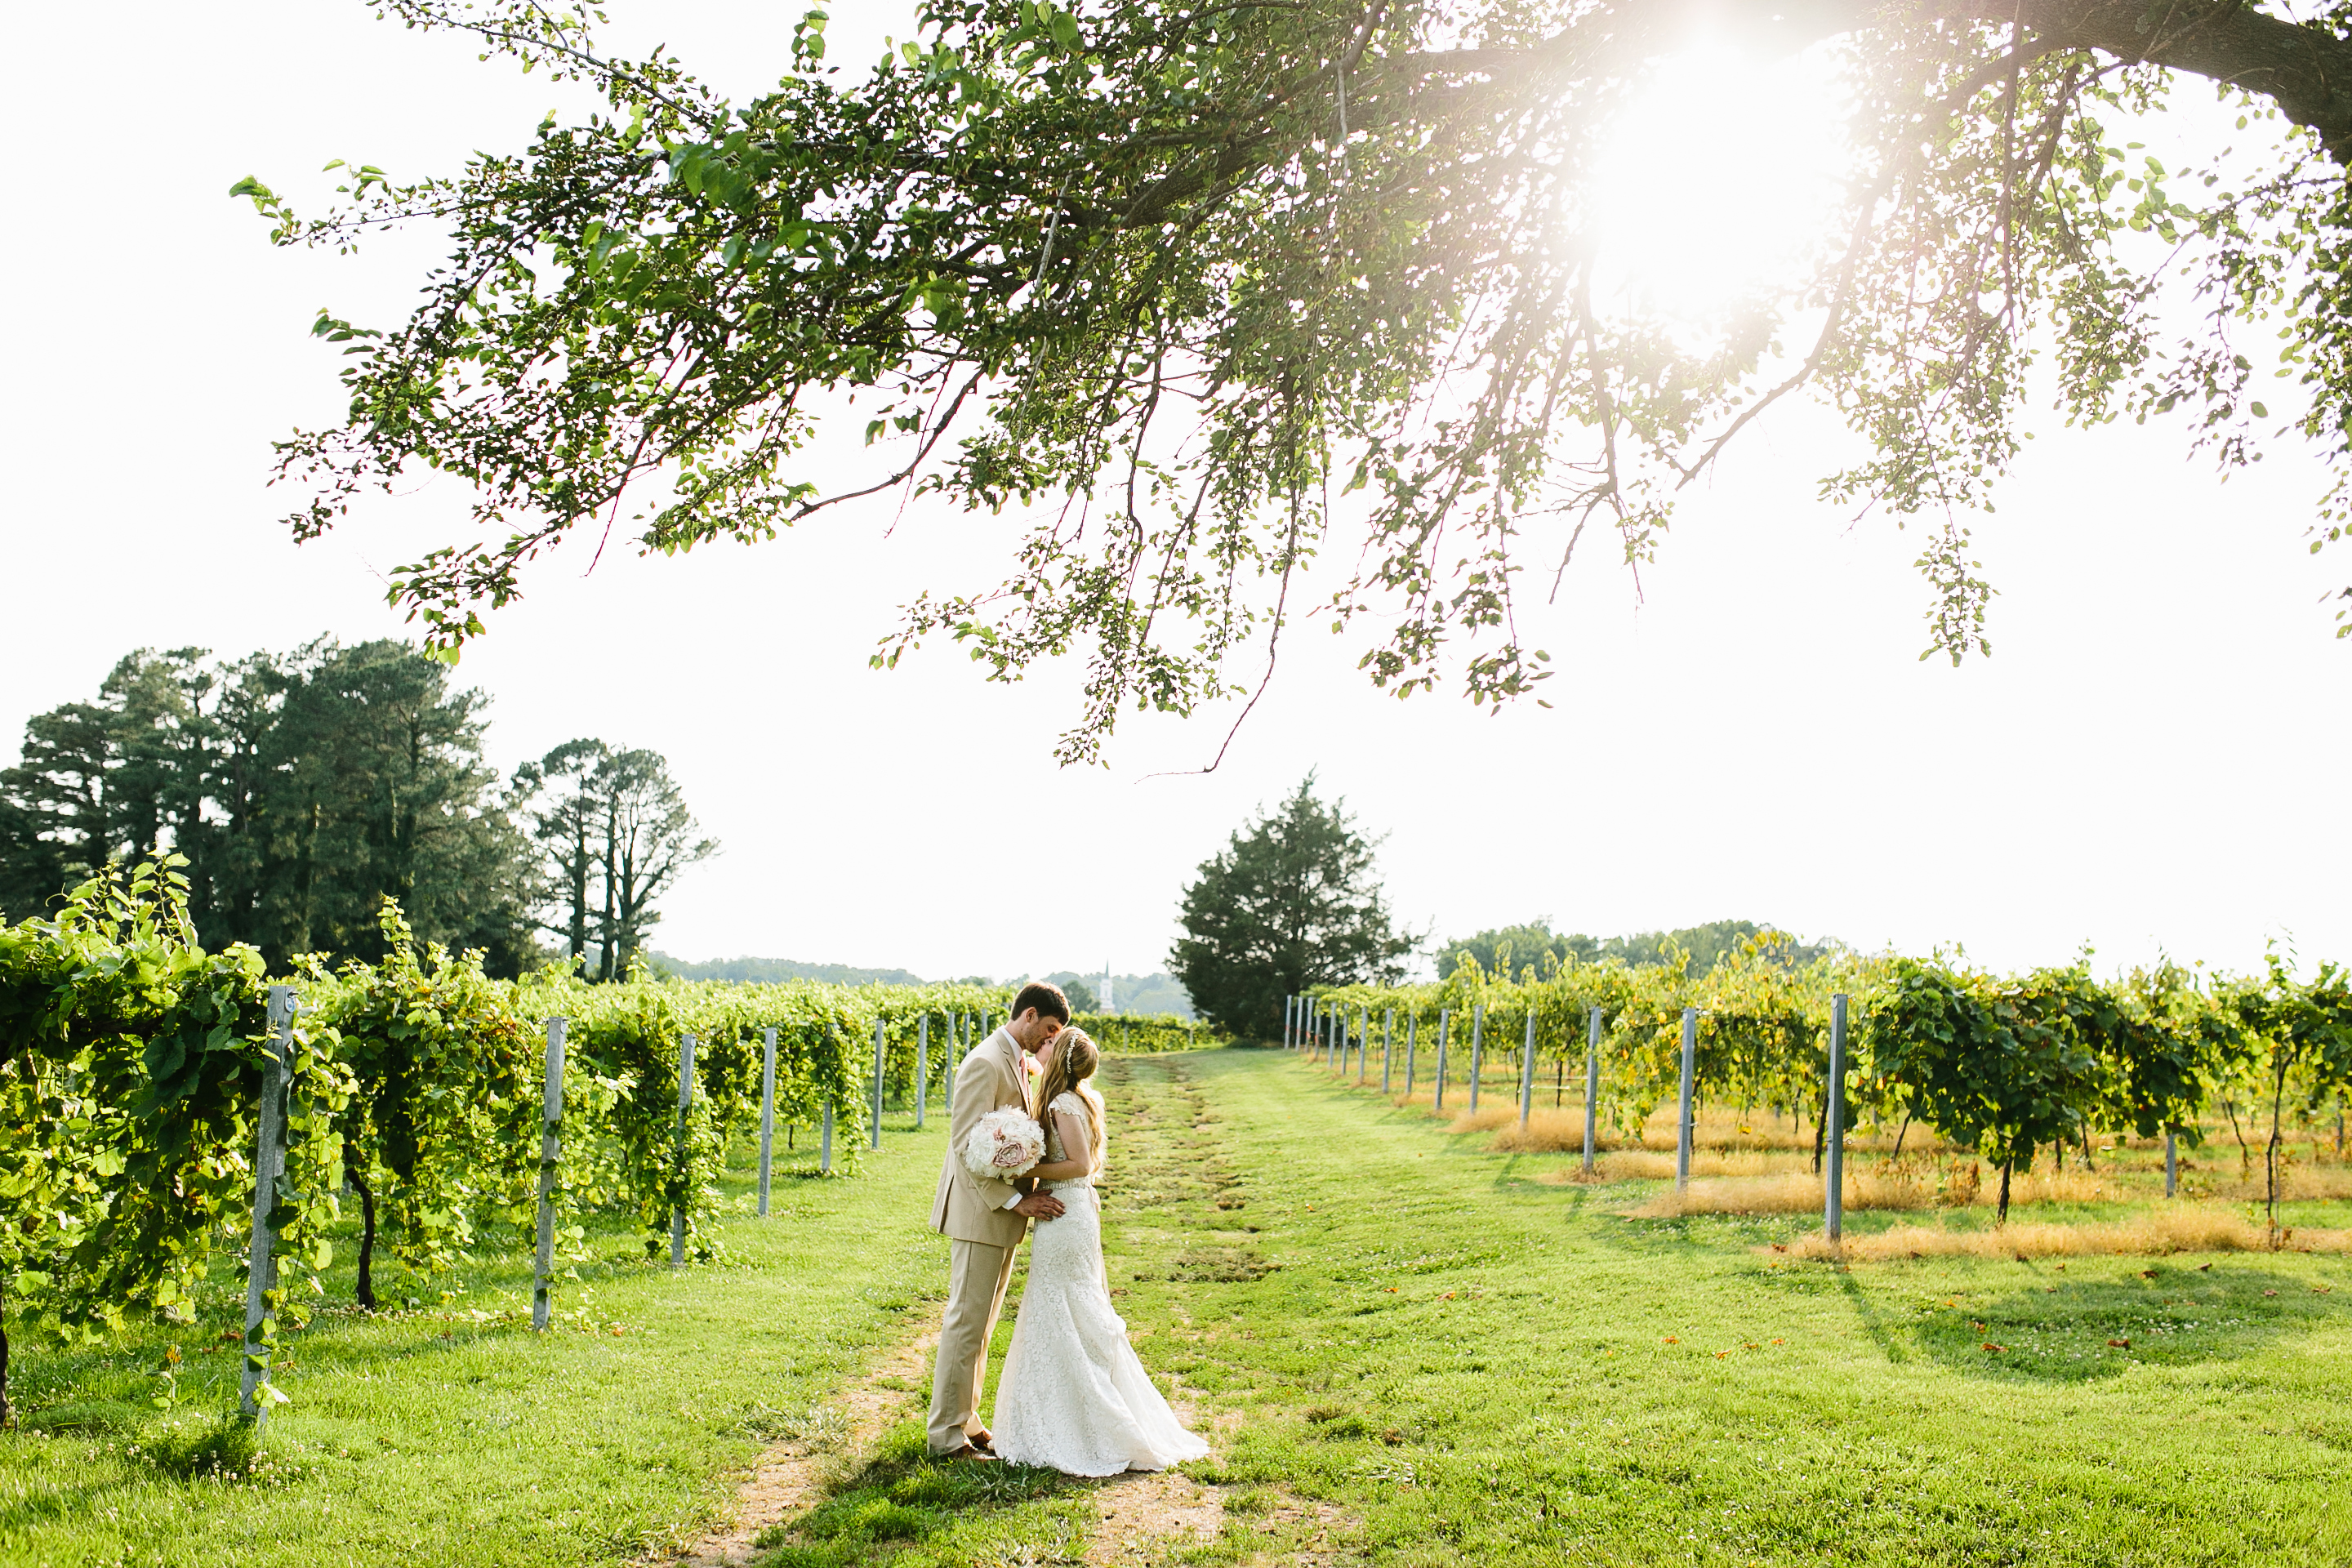 candid wedding photography. creative wedding images. natural wedding photography. winery wedding. vineyard wedding. southern wedding